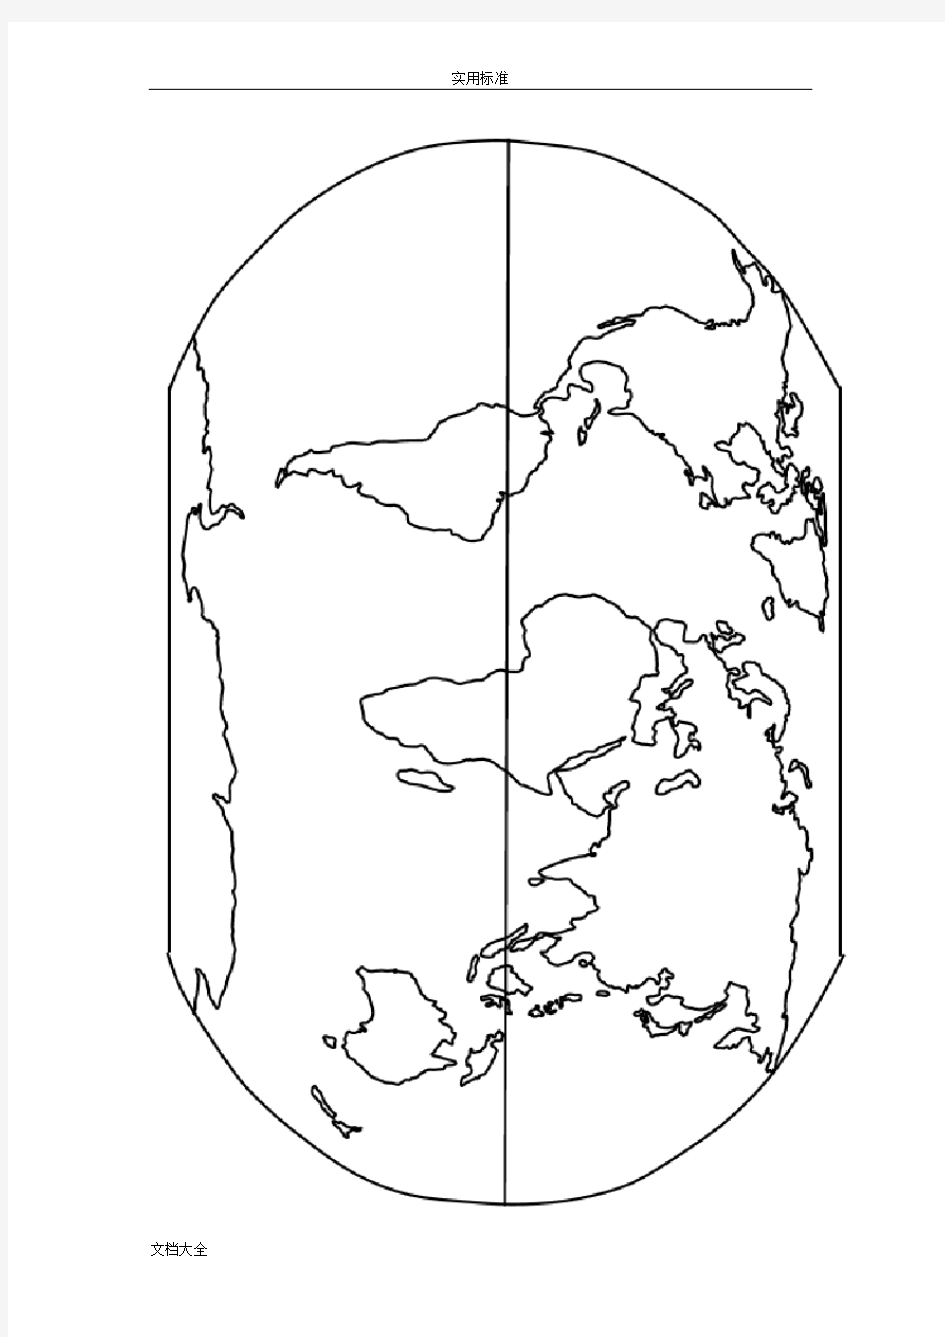 世界地图空白图(高清版)36756